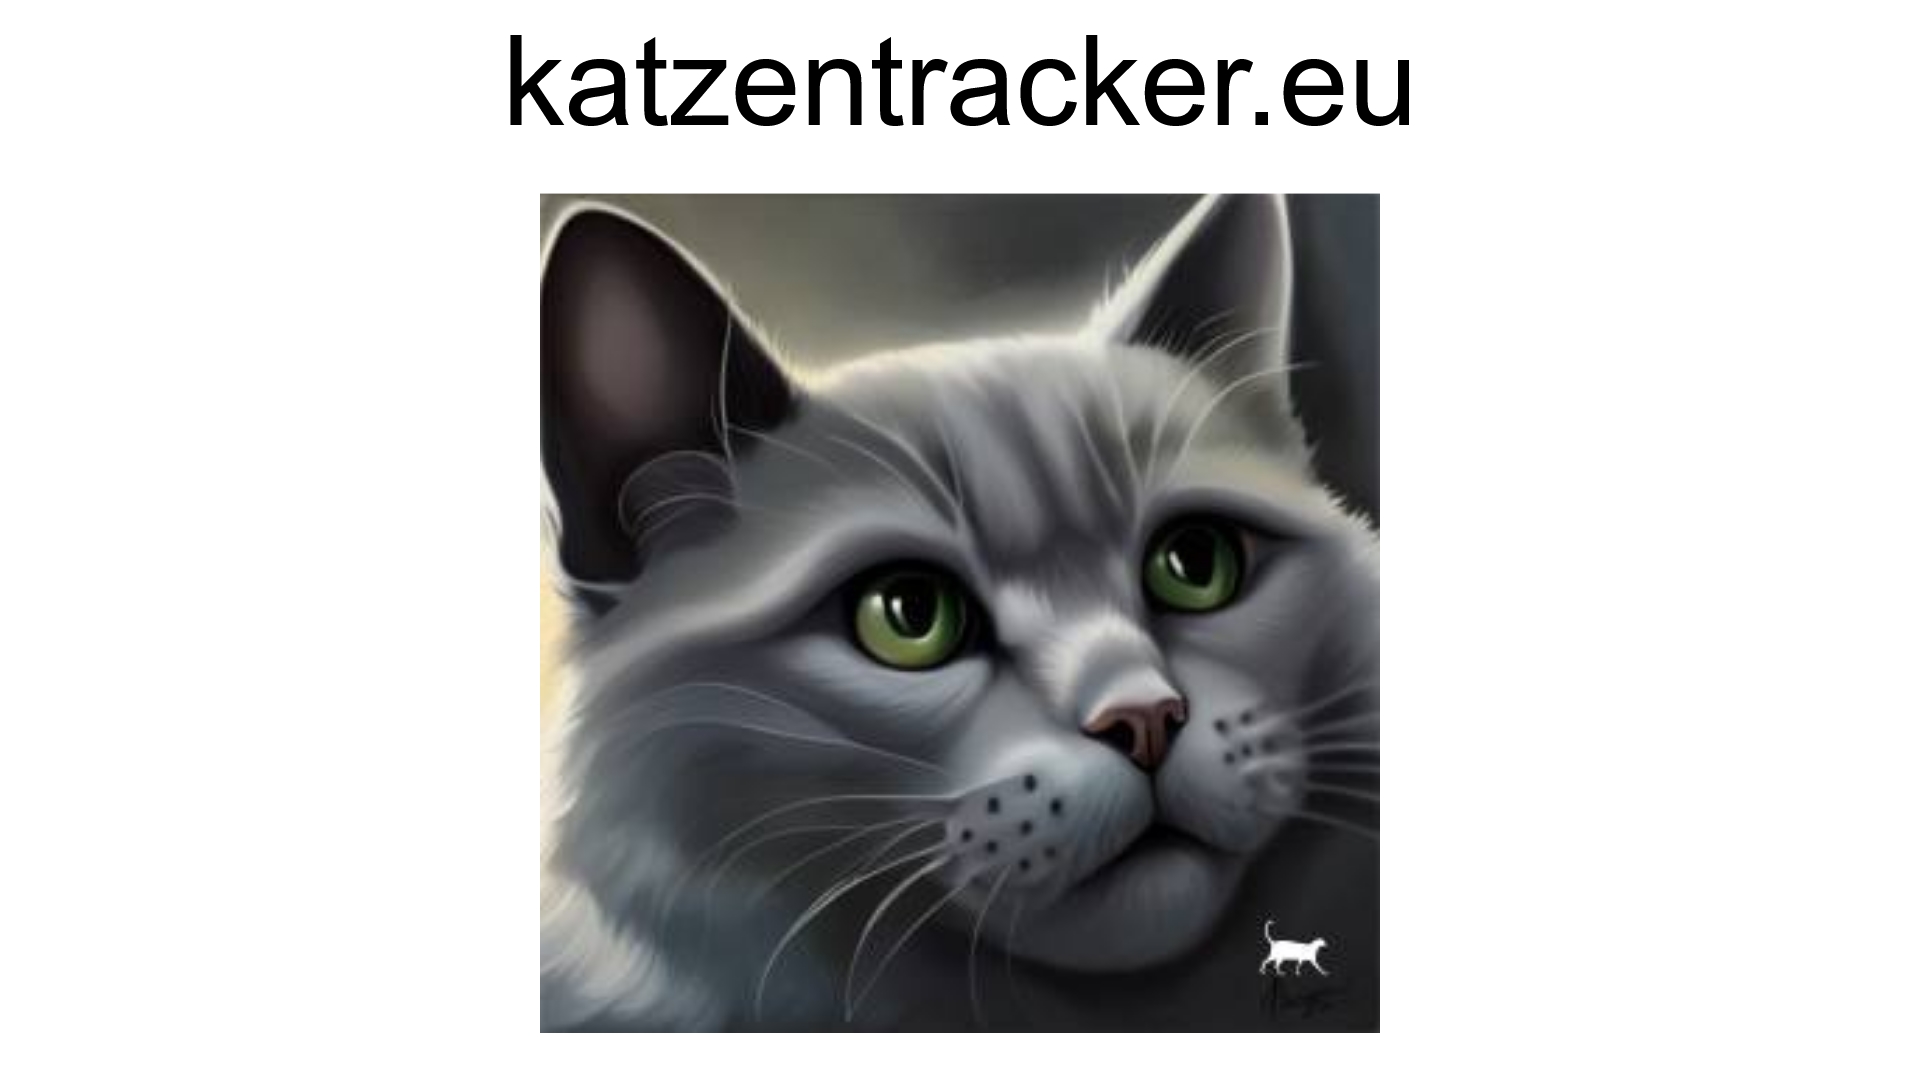 www.katzentracker.eu